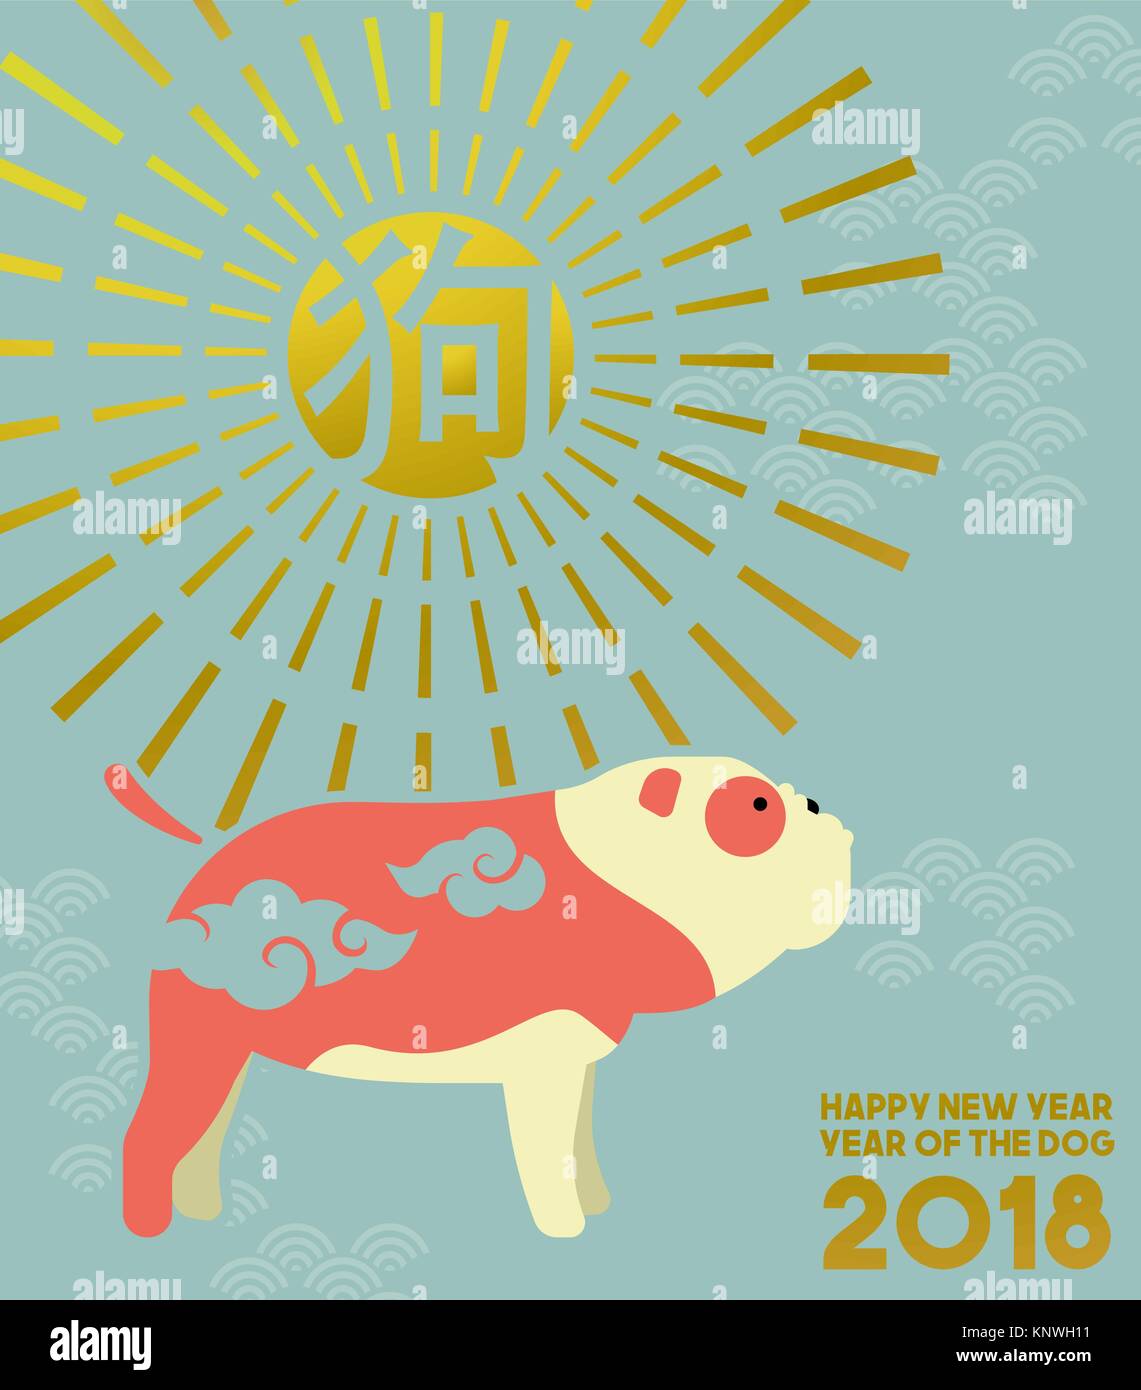 Chinesisches neues Jahr des Hundes 2018 Abbildung im modernen Stil mit Bulldogge, traditionellen asiatischen Ornamenten und Dekoration. EPS 10 Vektor. Stock Vektor